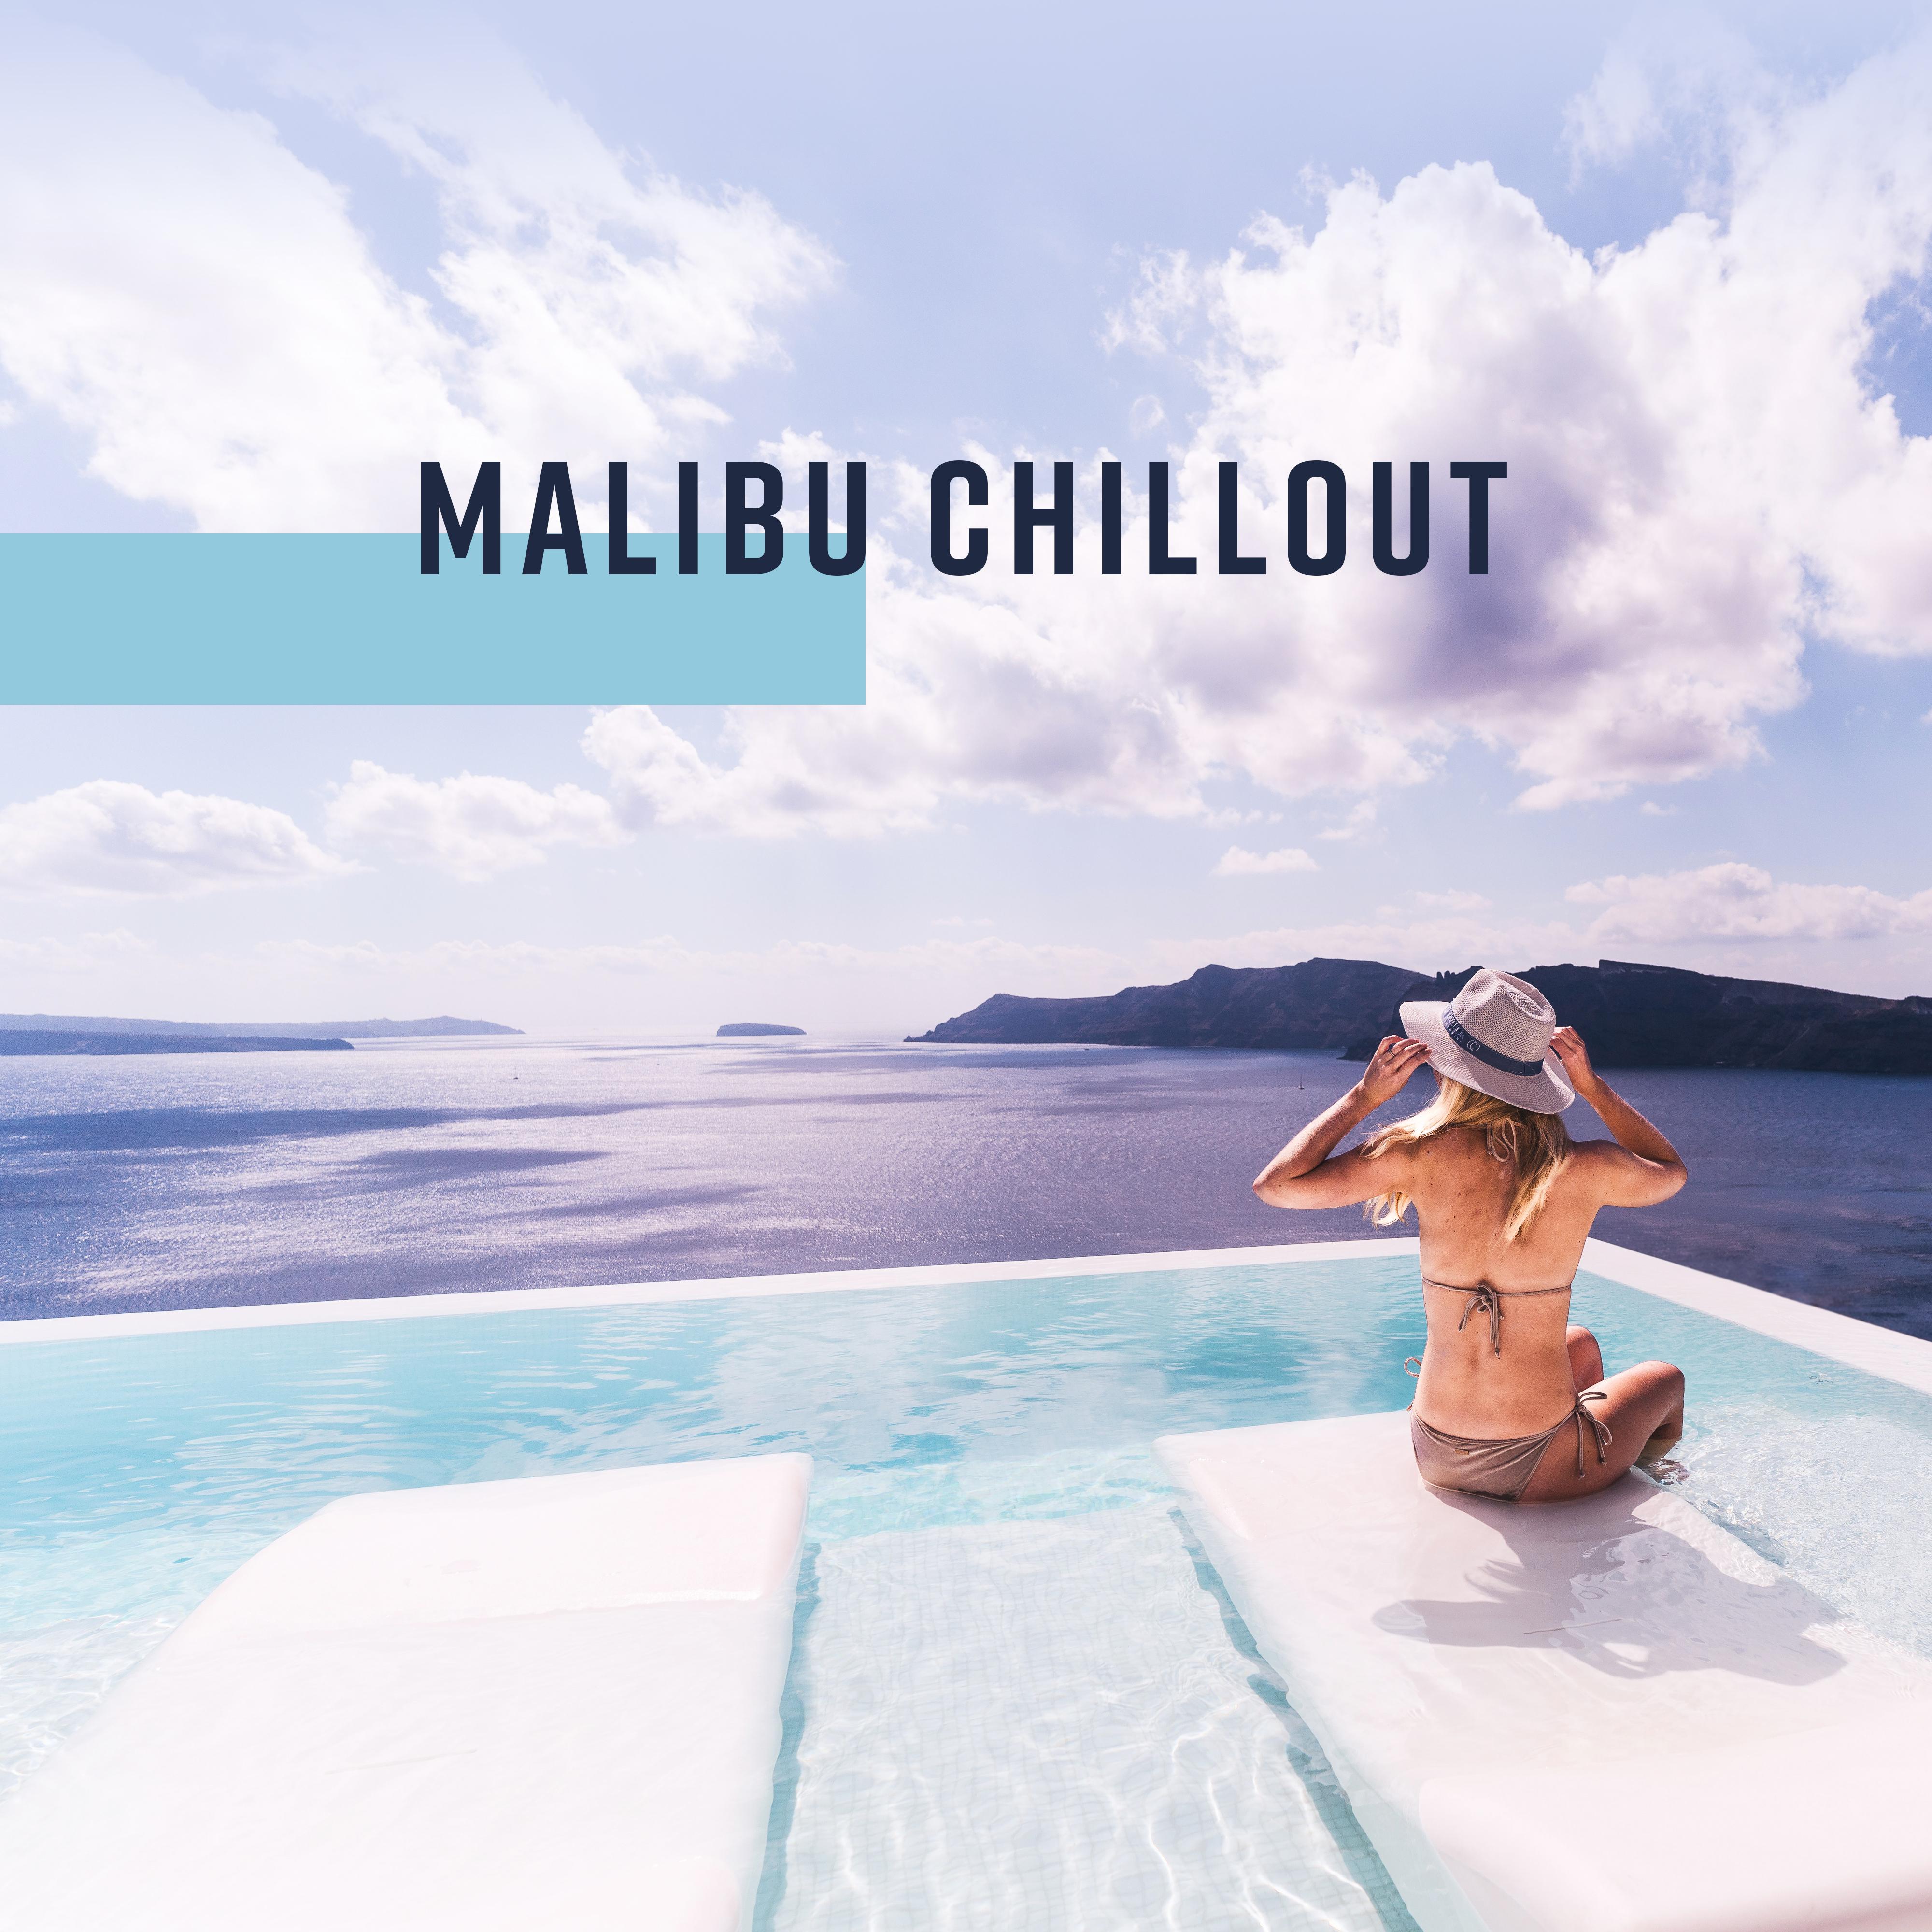 Malibu Chillout